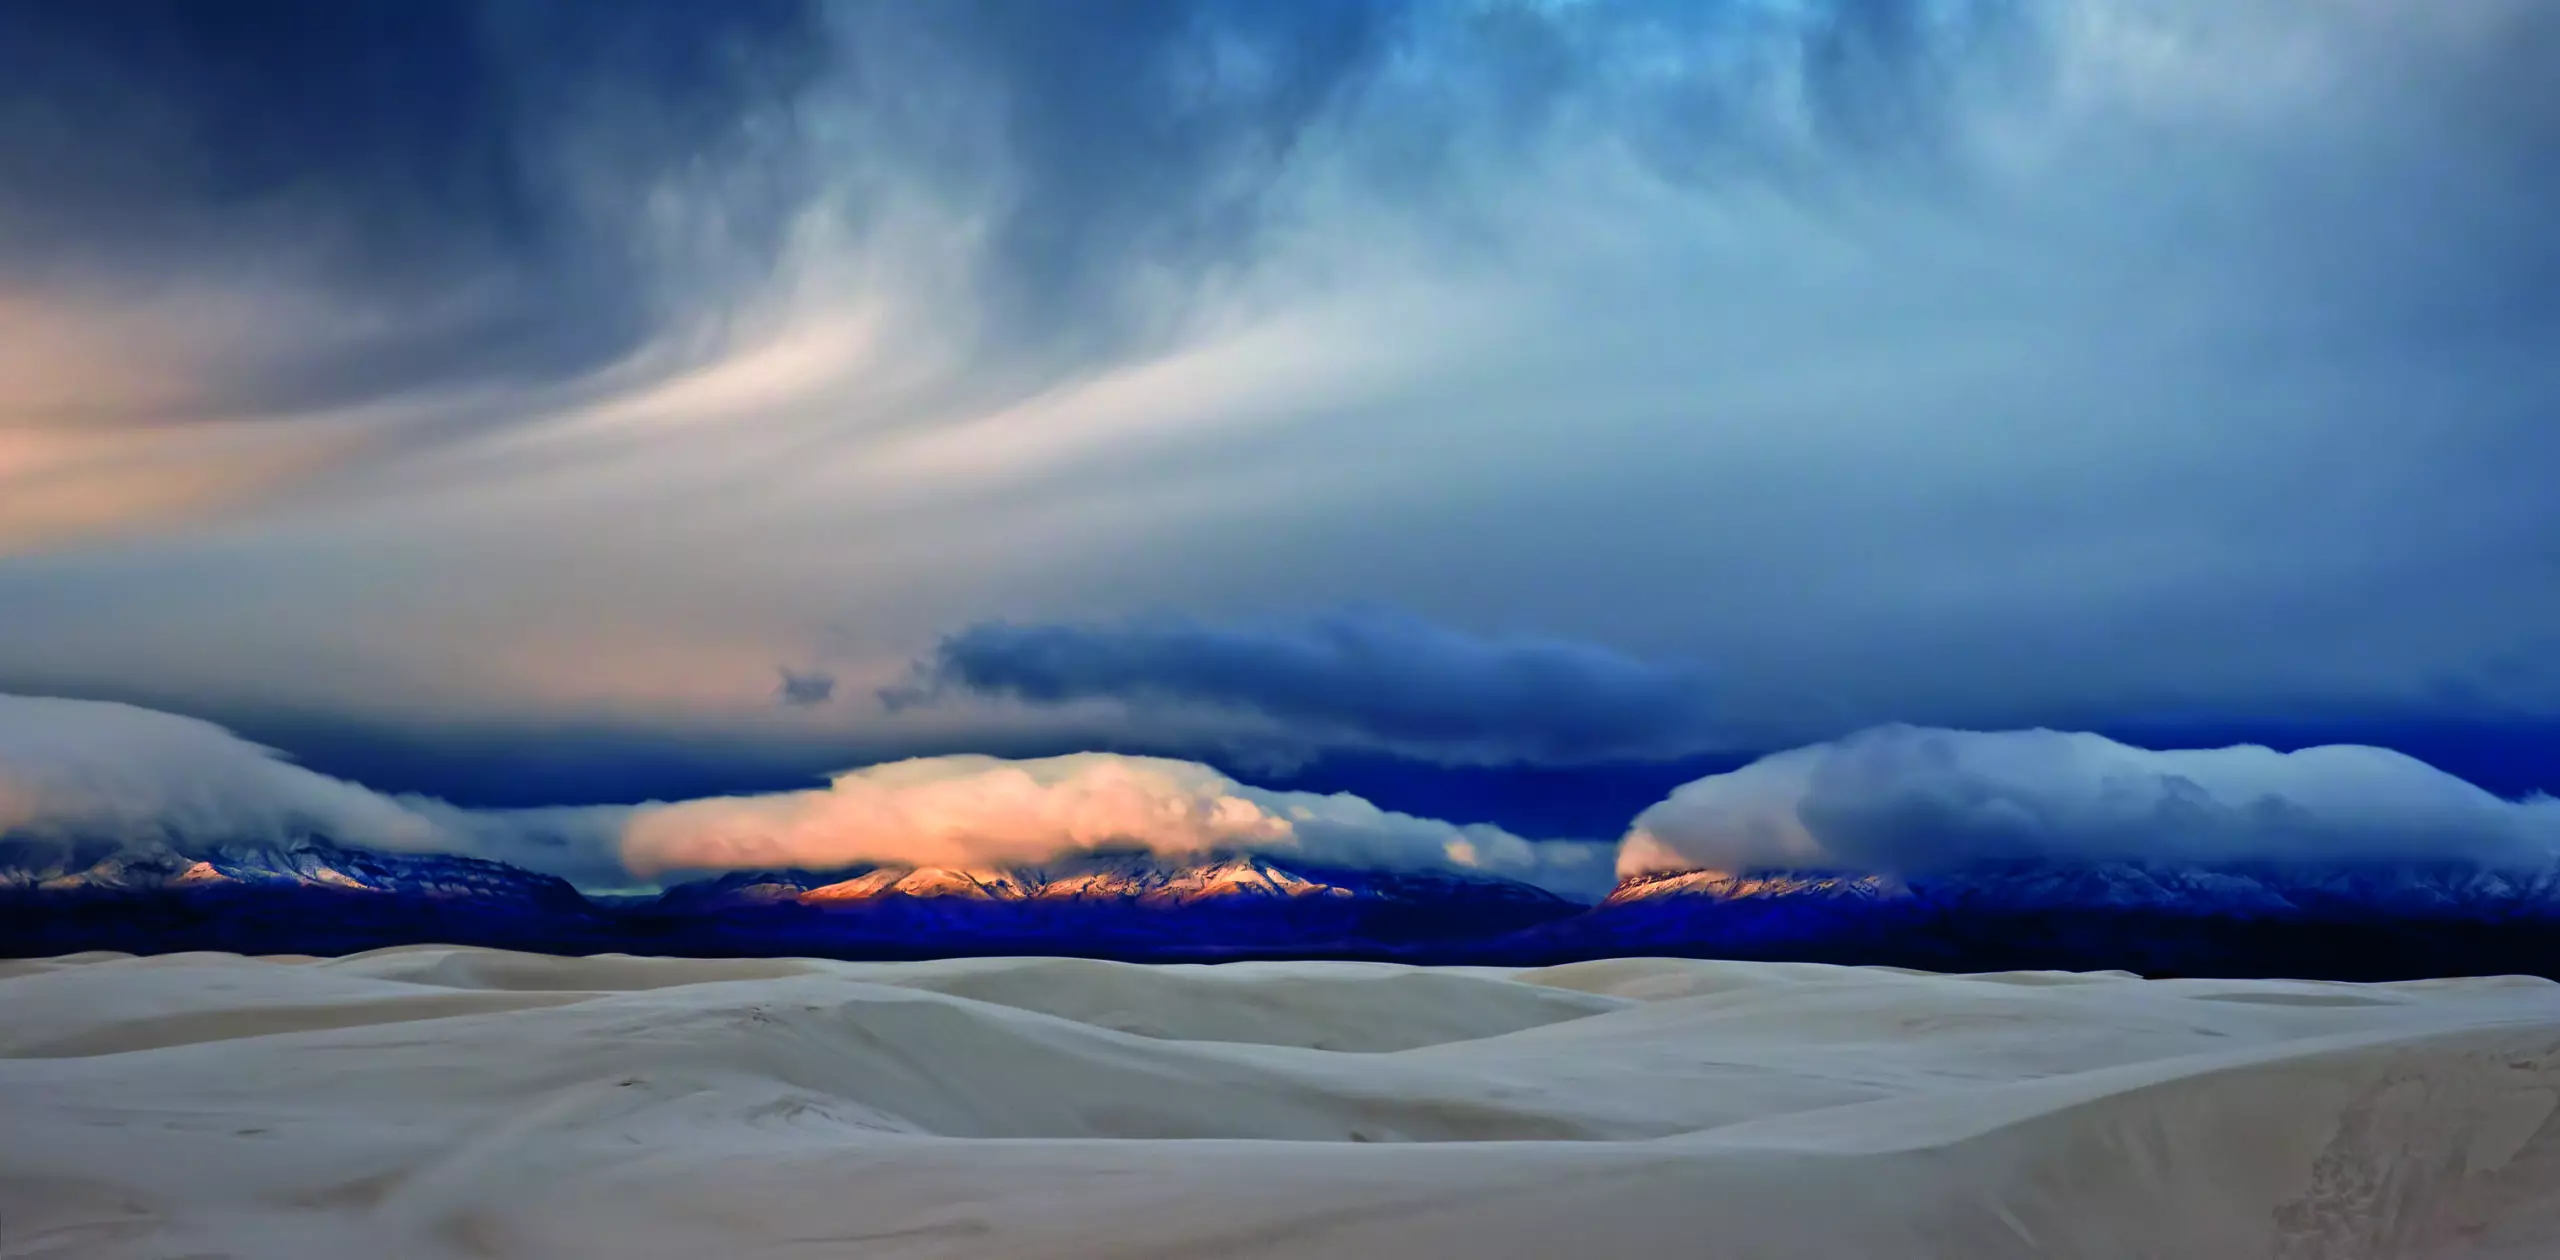 Wandbild (5134) Daybreak at white sands by Jon Fan präsentiert: Details und Strukturen,Natur,Landschaften,Strände,Amerika,Berge,Sonstige Naturdetails